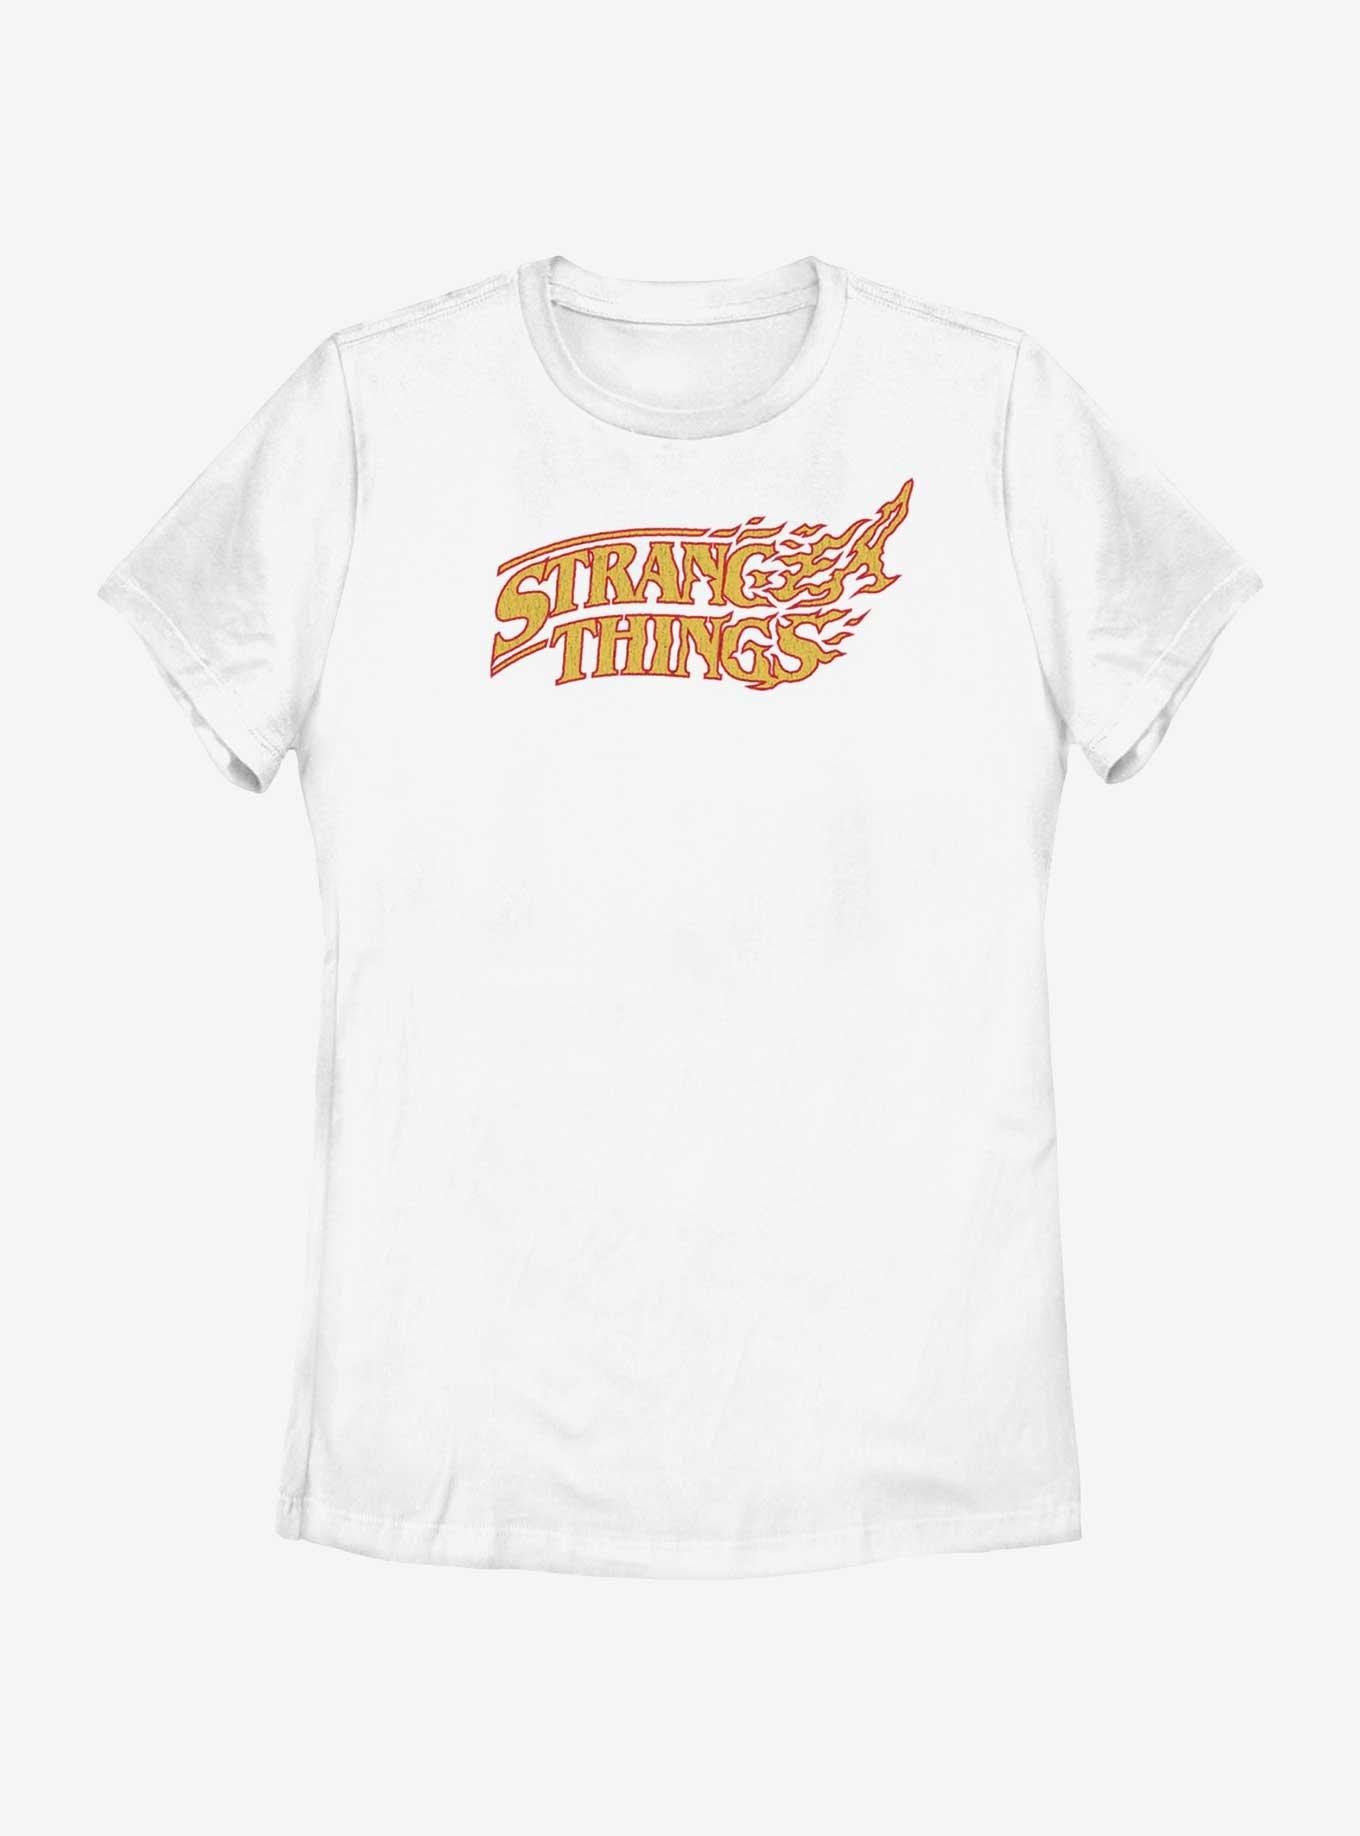 Stranger Things Vanishing Fire Logo Womens T-Shirt, WHITE, hi-res